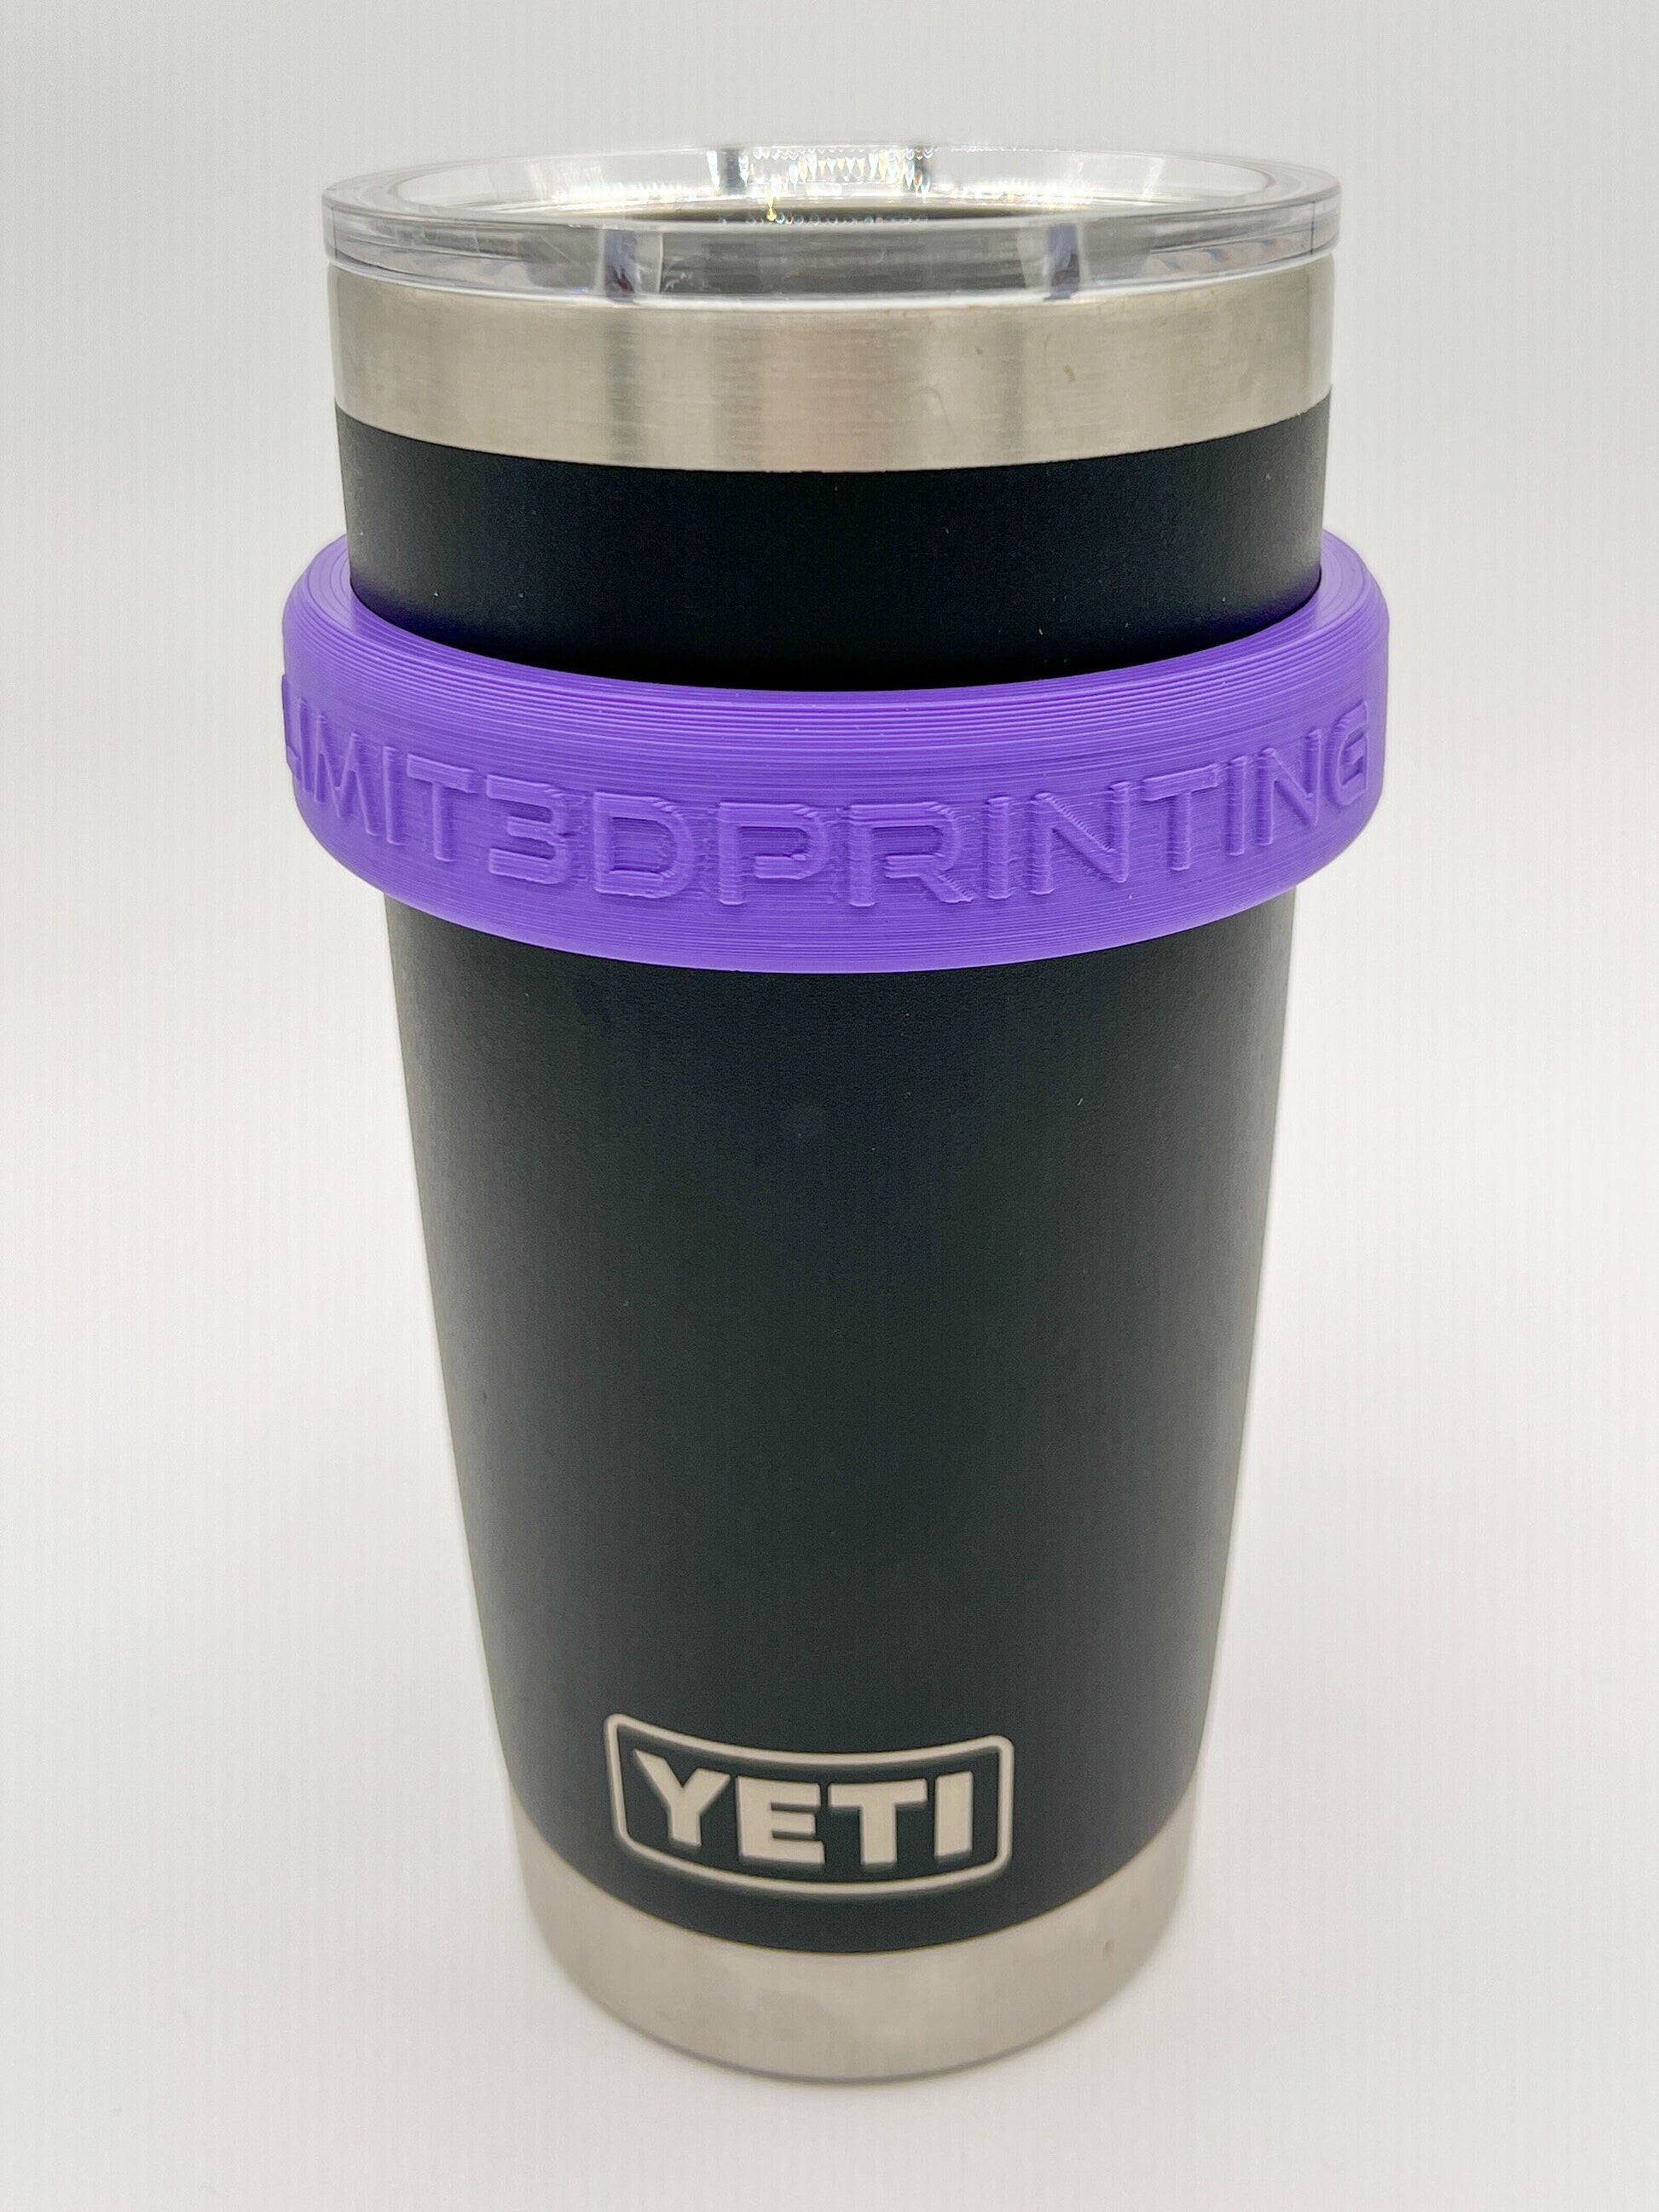 YETI Shop By Color  Yeti accessories, Yeti monogram, Yeti